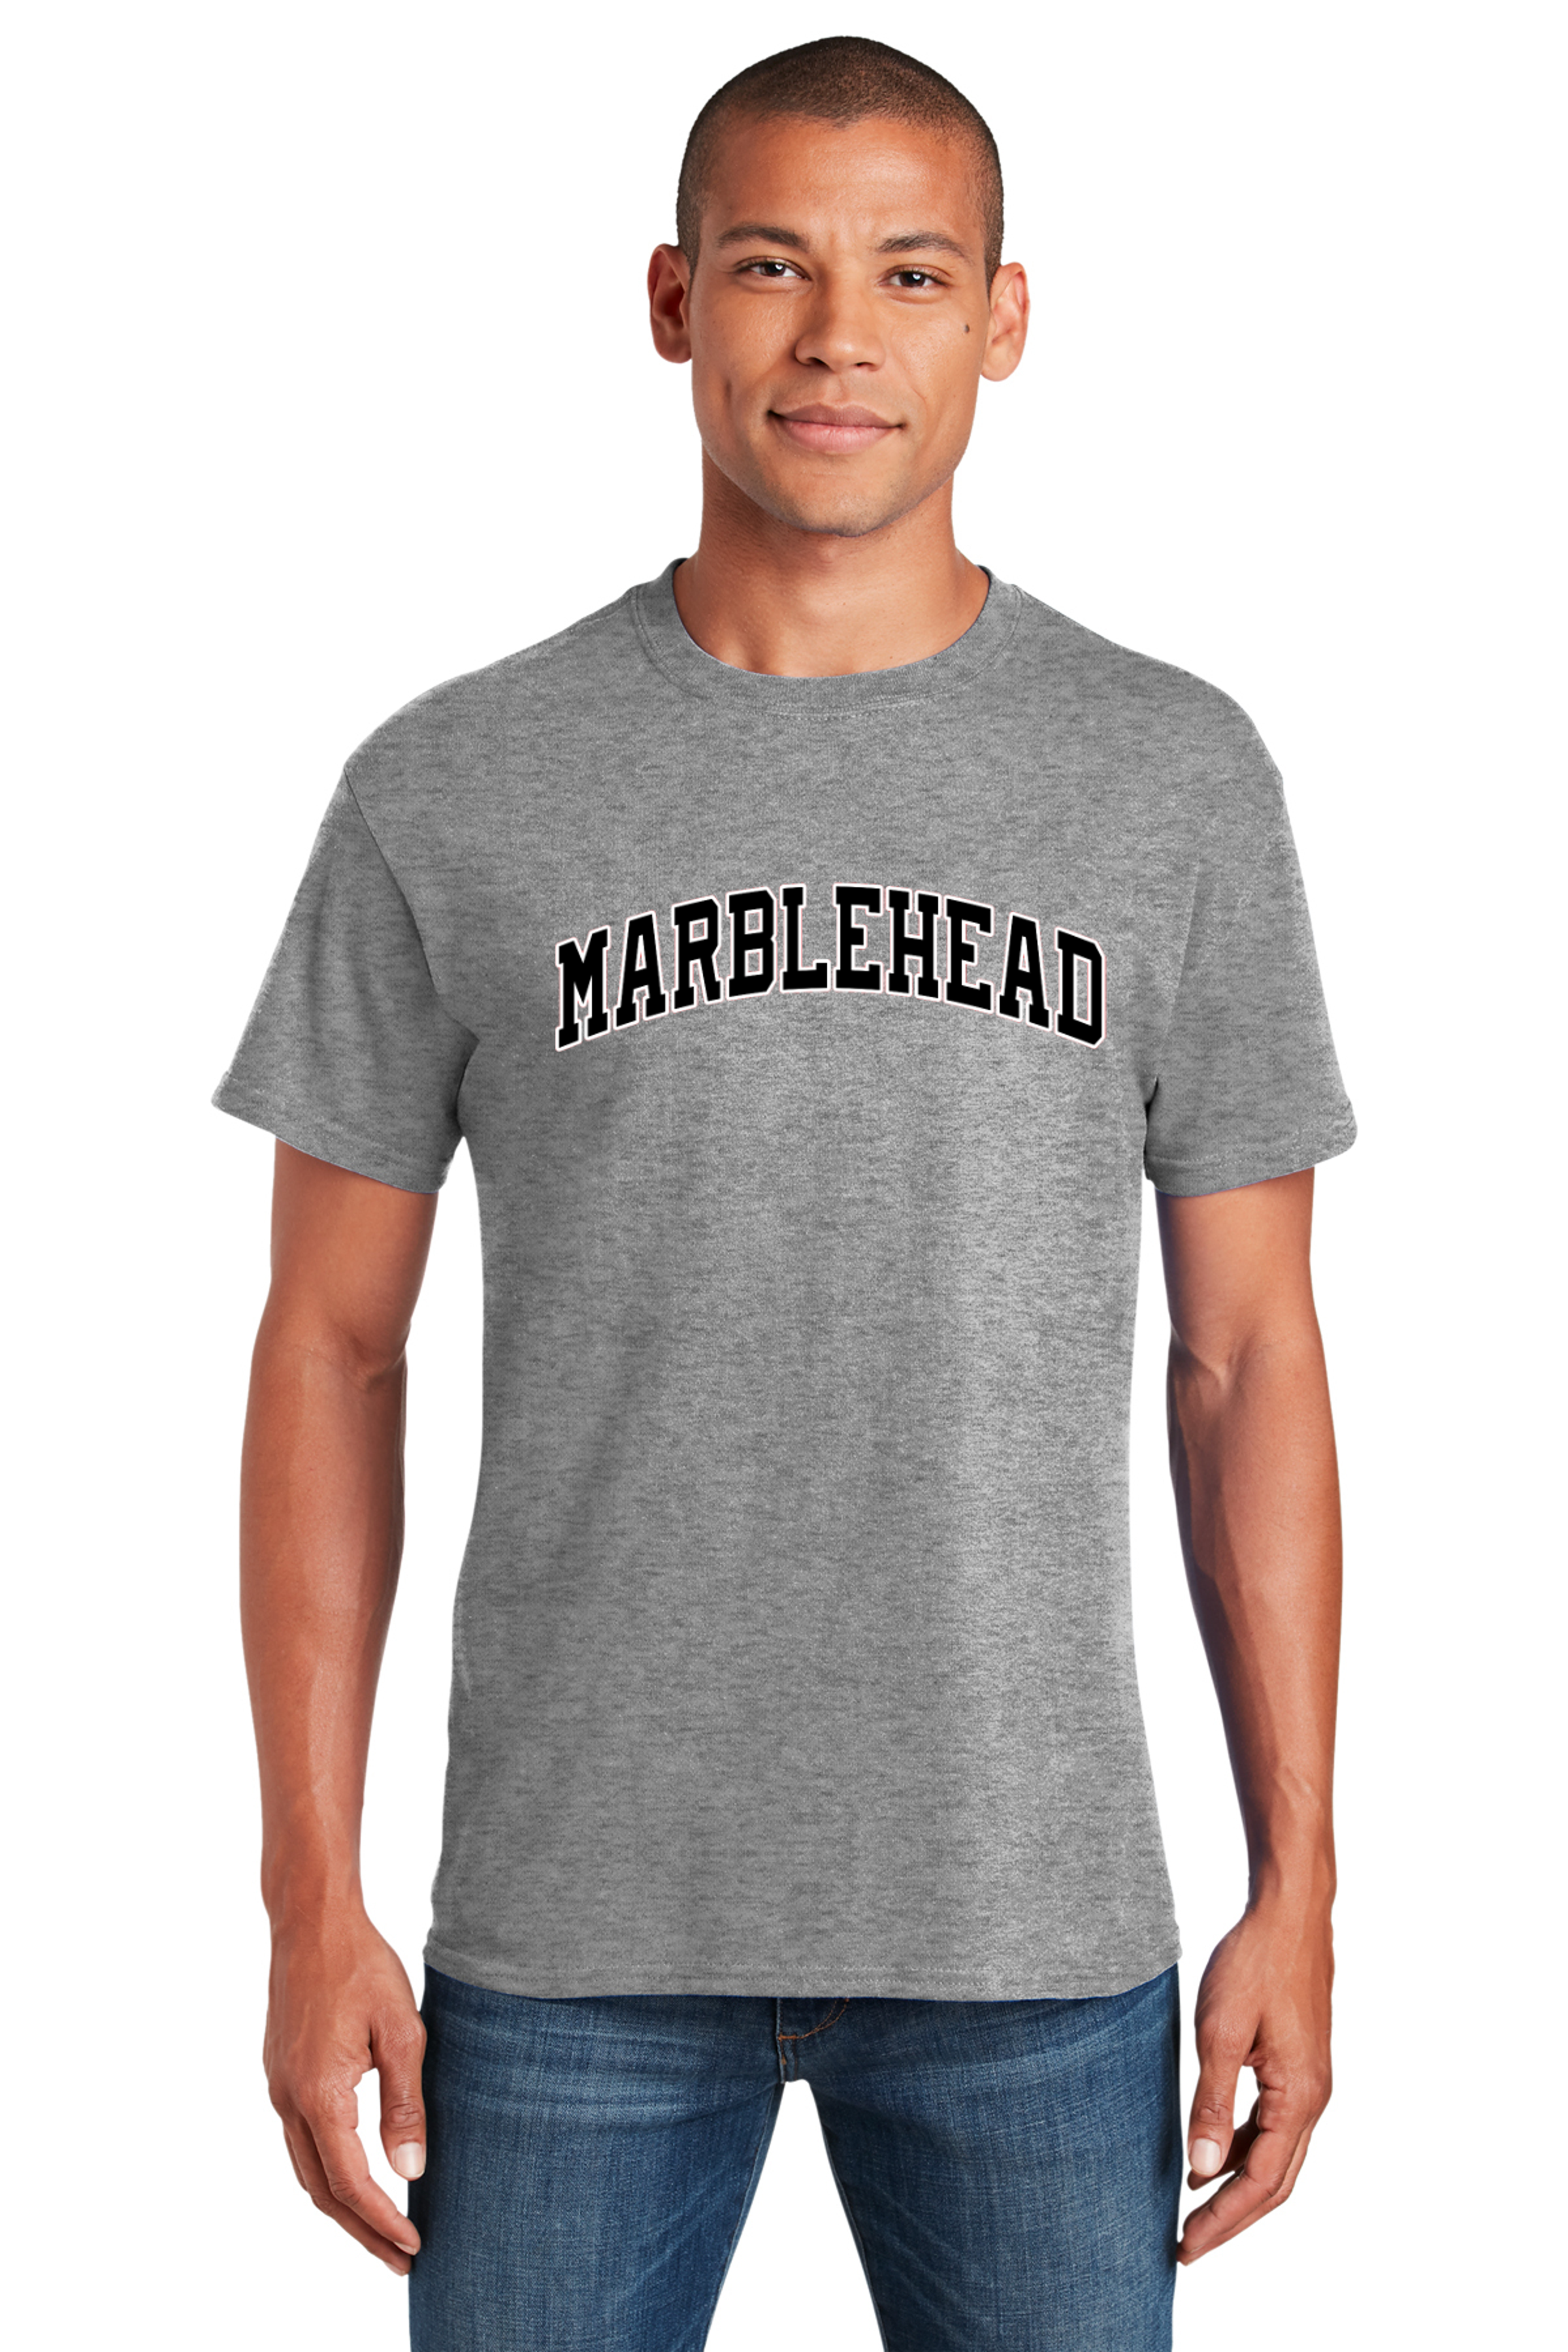 Marblehead Coastal Heavyweight Tee